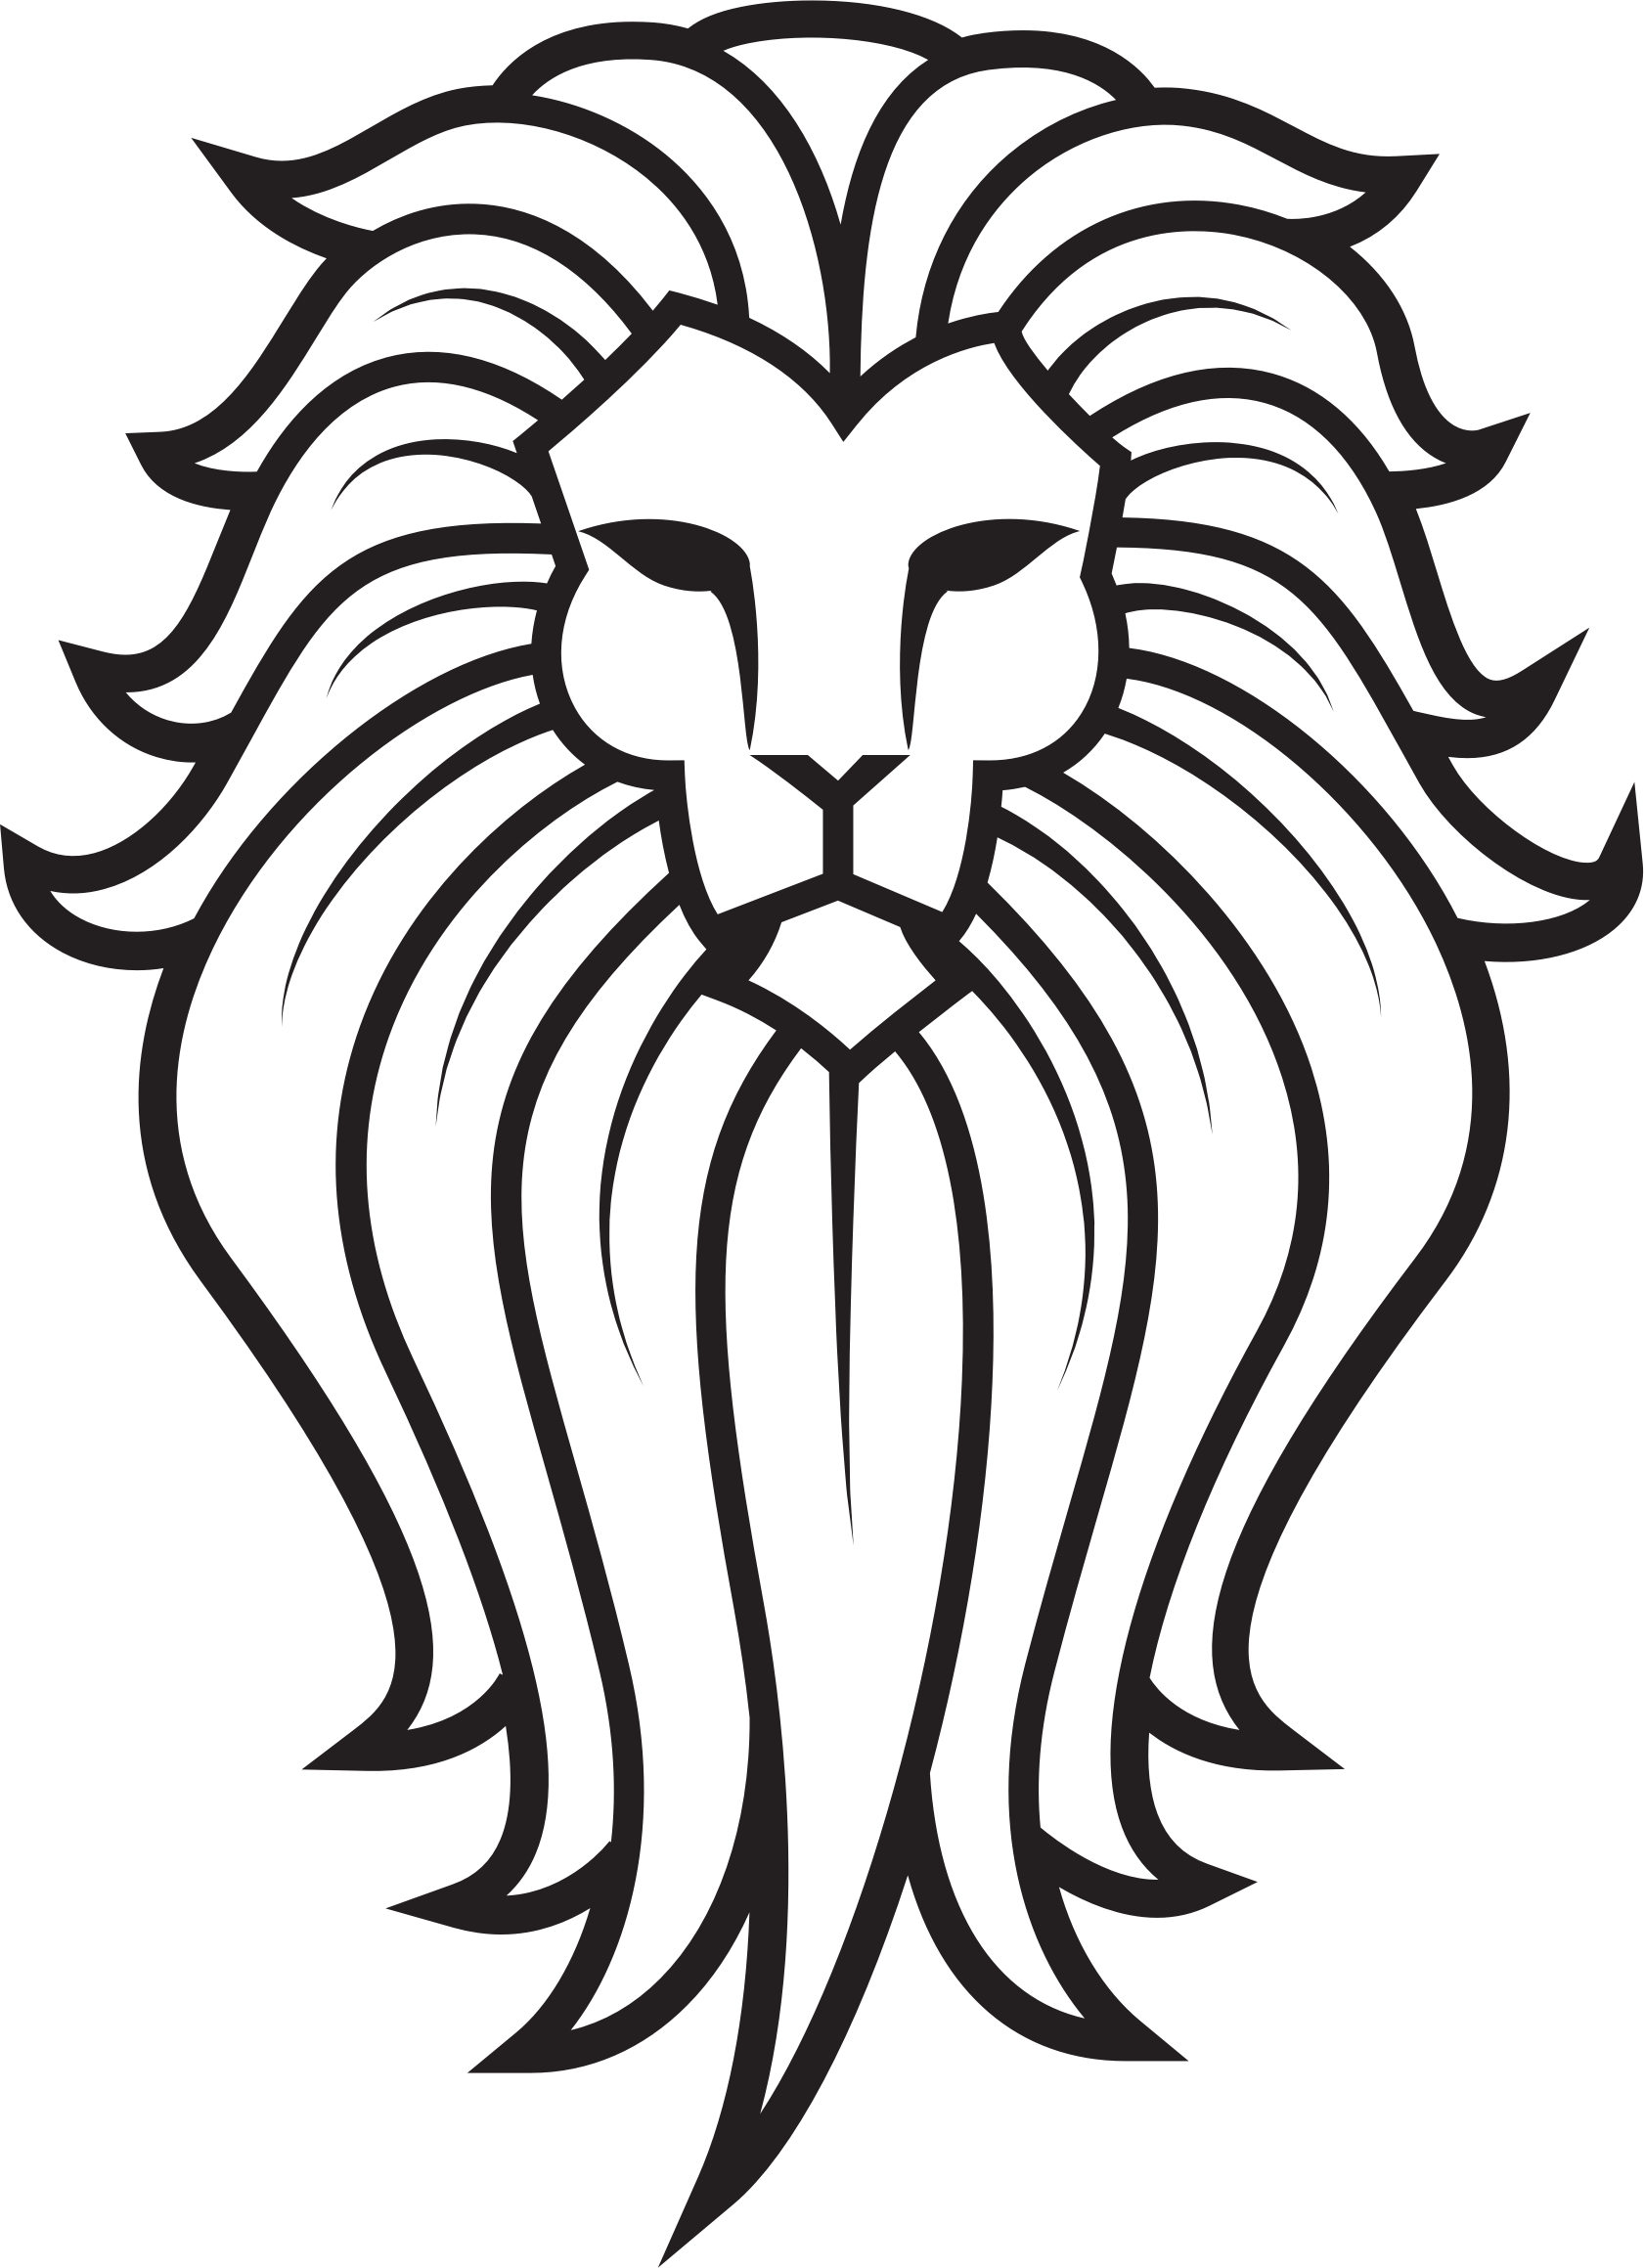 Lion Tattoo Tiger Clip art - tattoo png download - 1681*2319 - Free  Transparent Lion png Download. - Clip Art Library